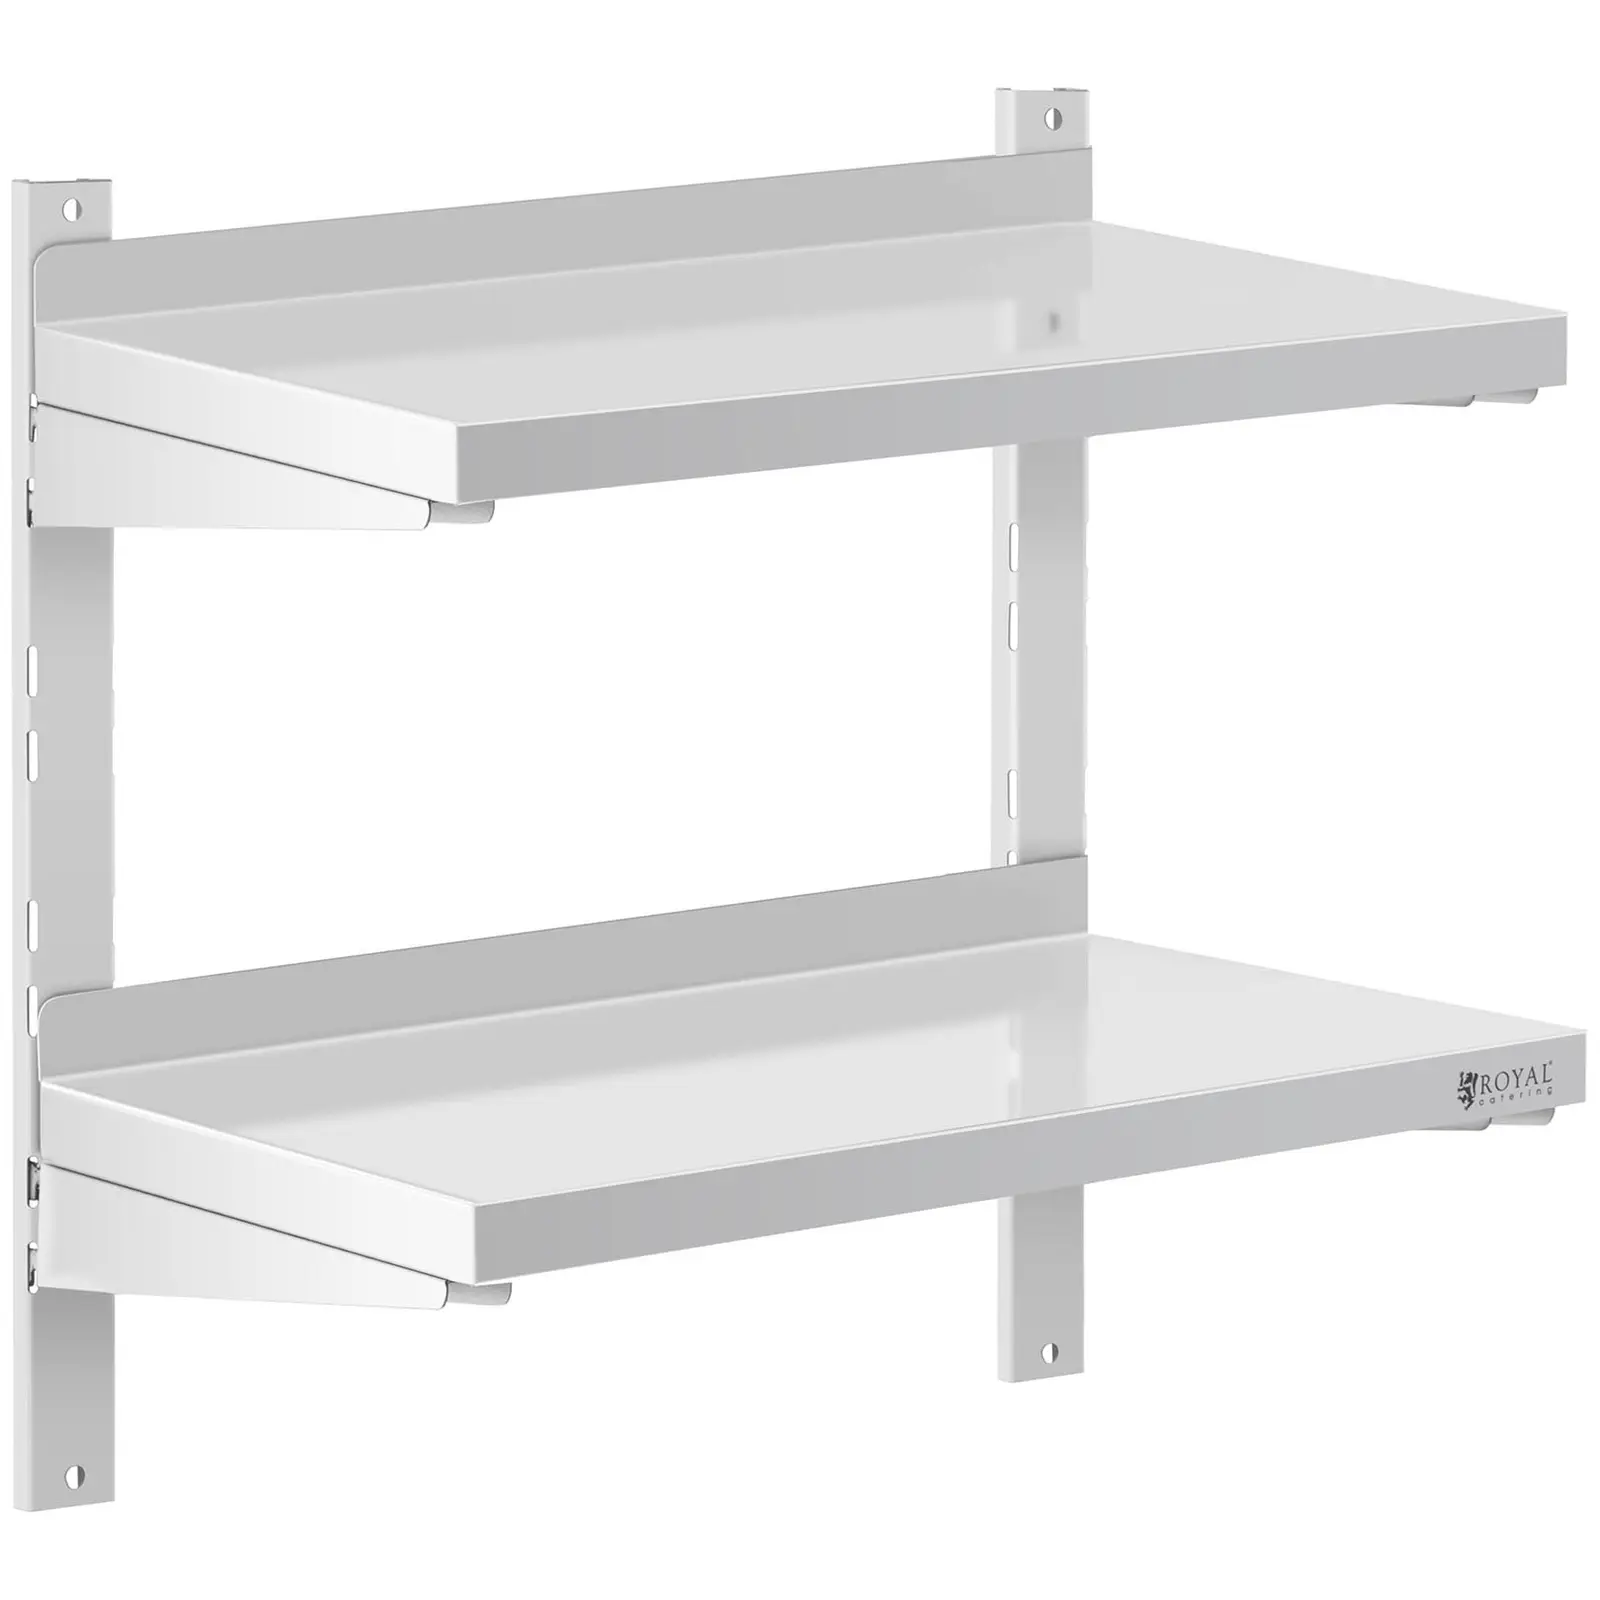 Stainless Steel Wall Shelf - 2 shelves - 30 x 60 cm